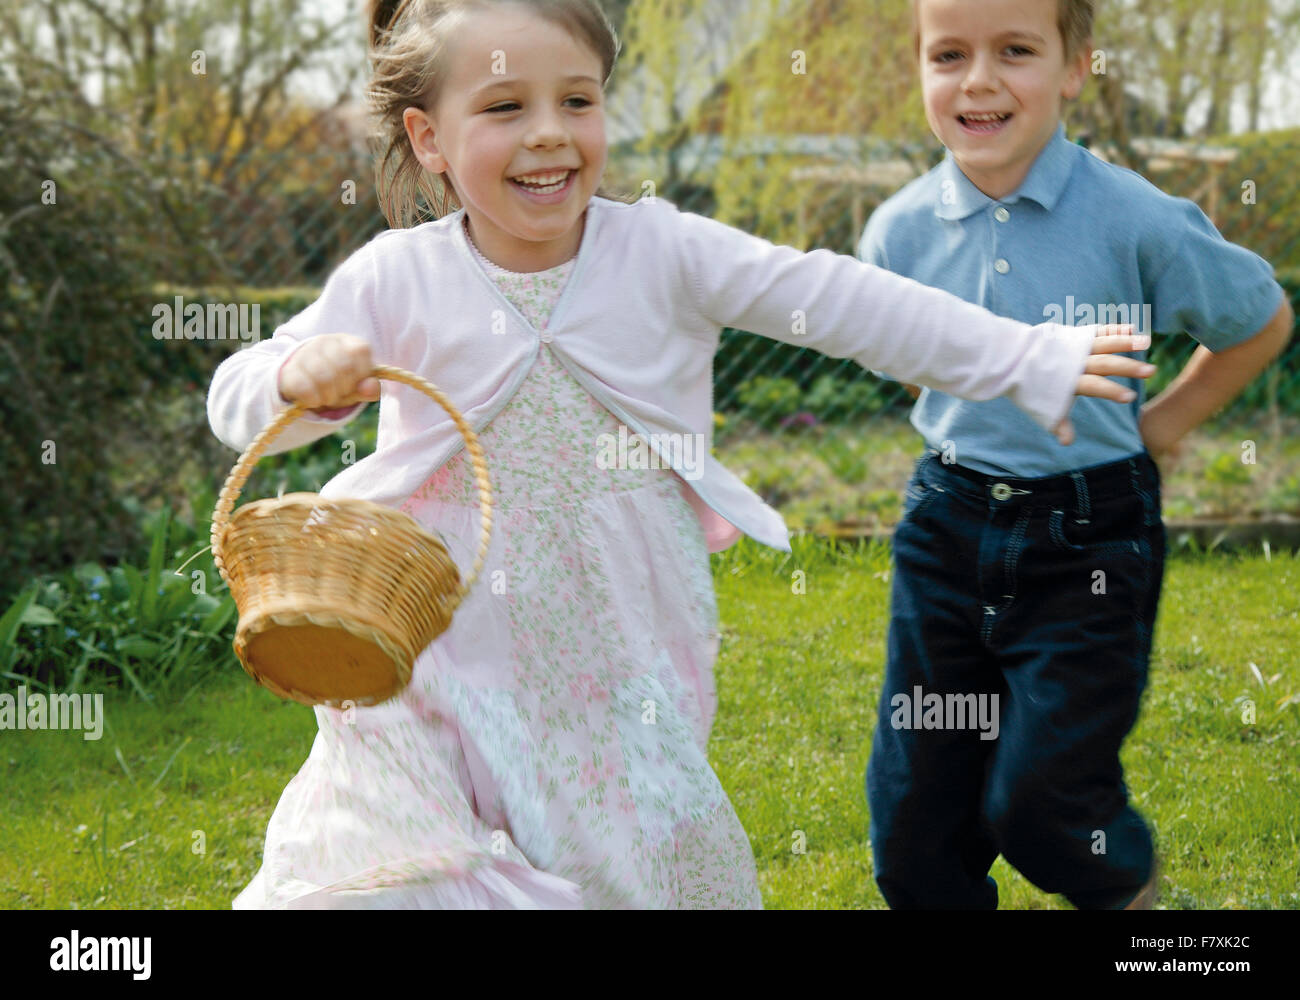 Maedchen mit Osterkoerbchen und Junge rennen im Garten Foto Stock